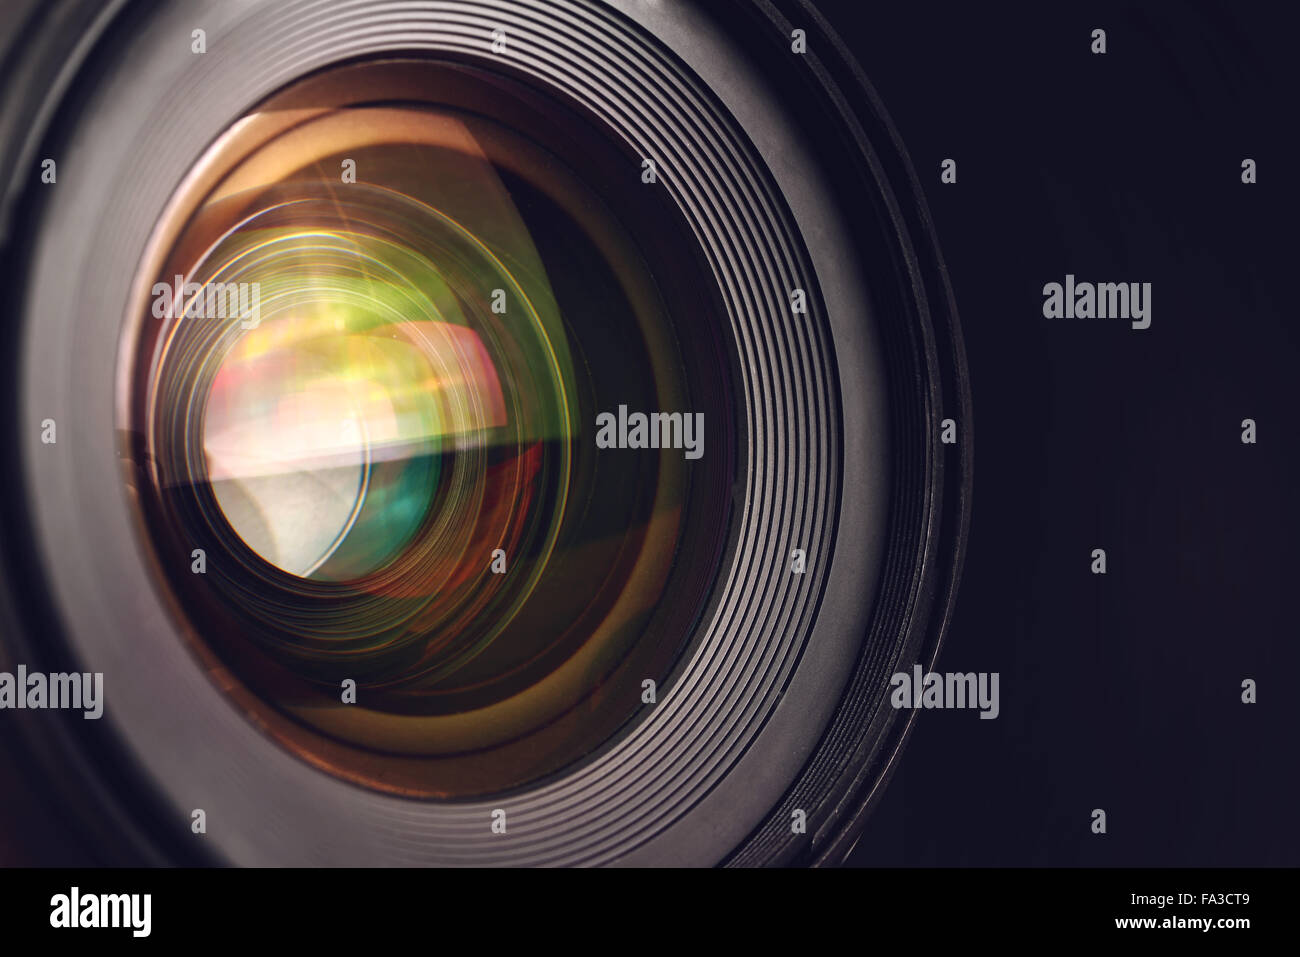 Détail de l'objectif de l'appareil photo, la vitre avant de la photographie grand angle objectif de l'appareil photo reflex numérique, macro shot Banque D'Images